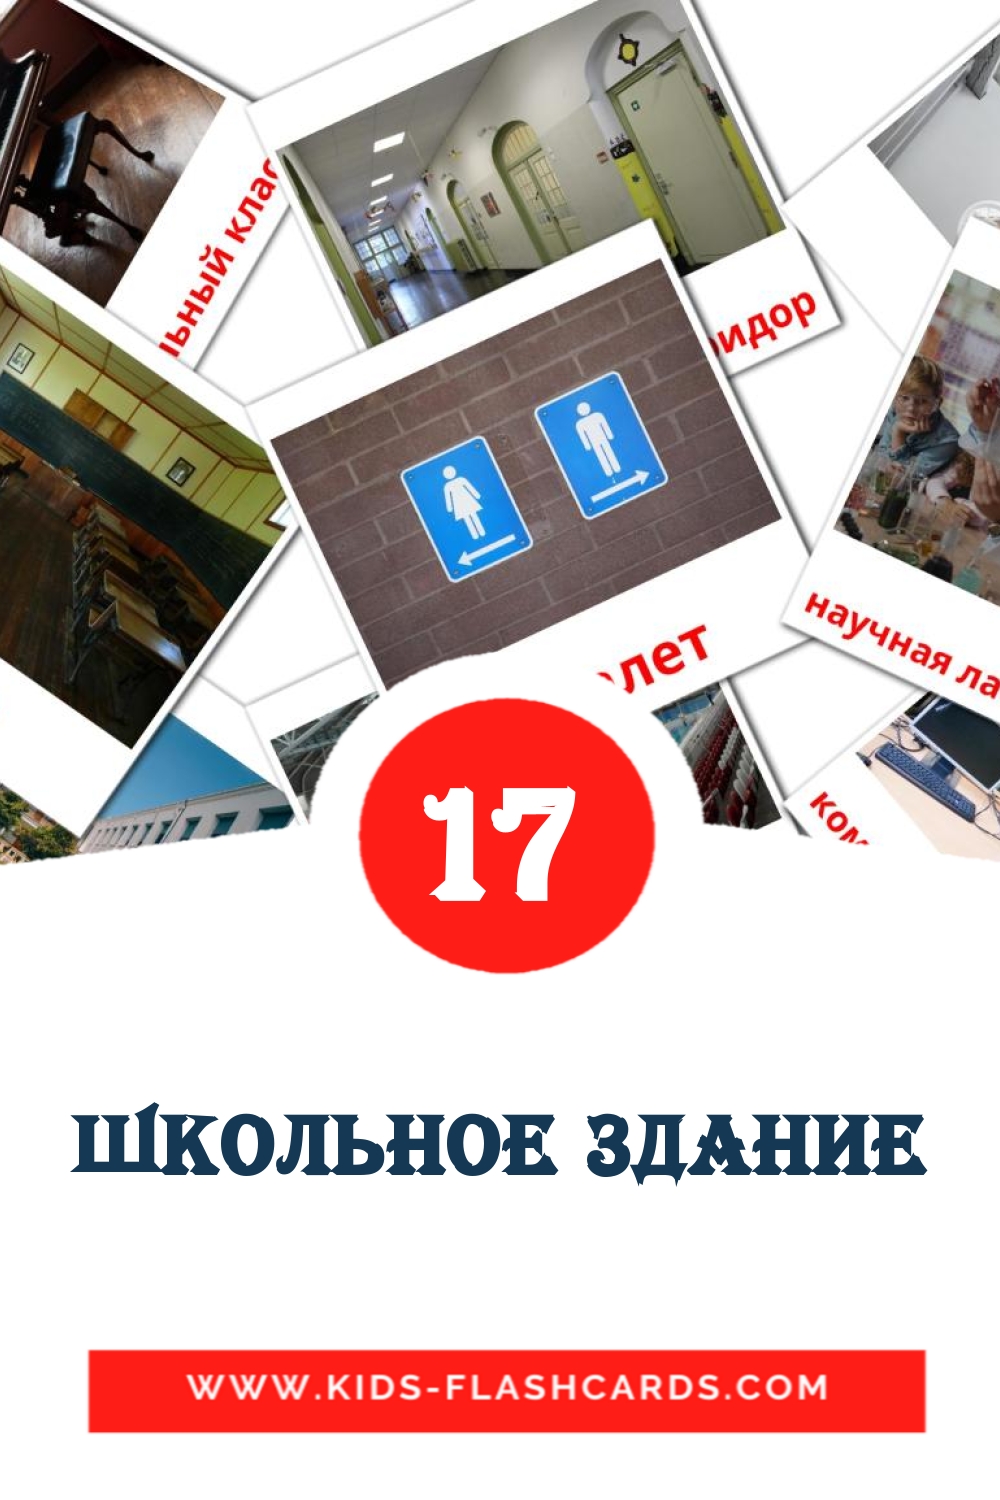 17 Школьное здание Bildkarten für den Kindergarten auf Russisch